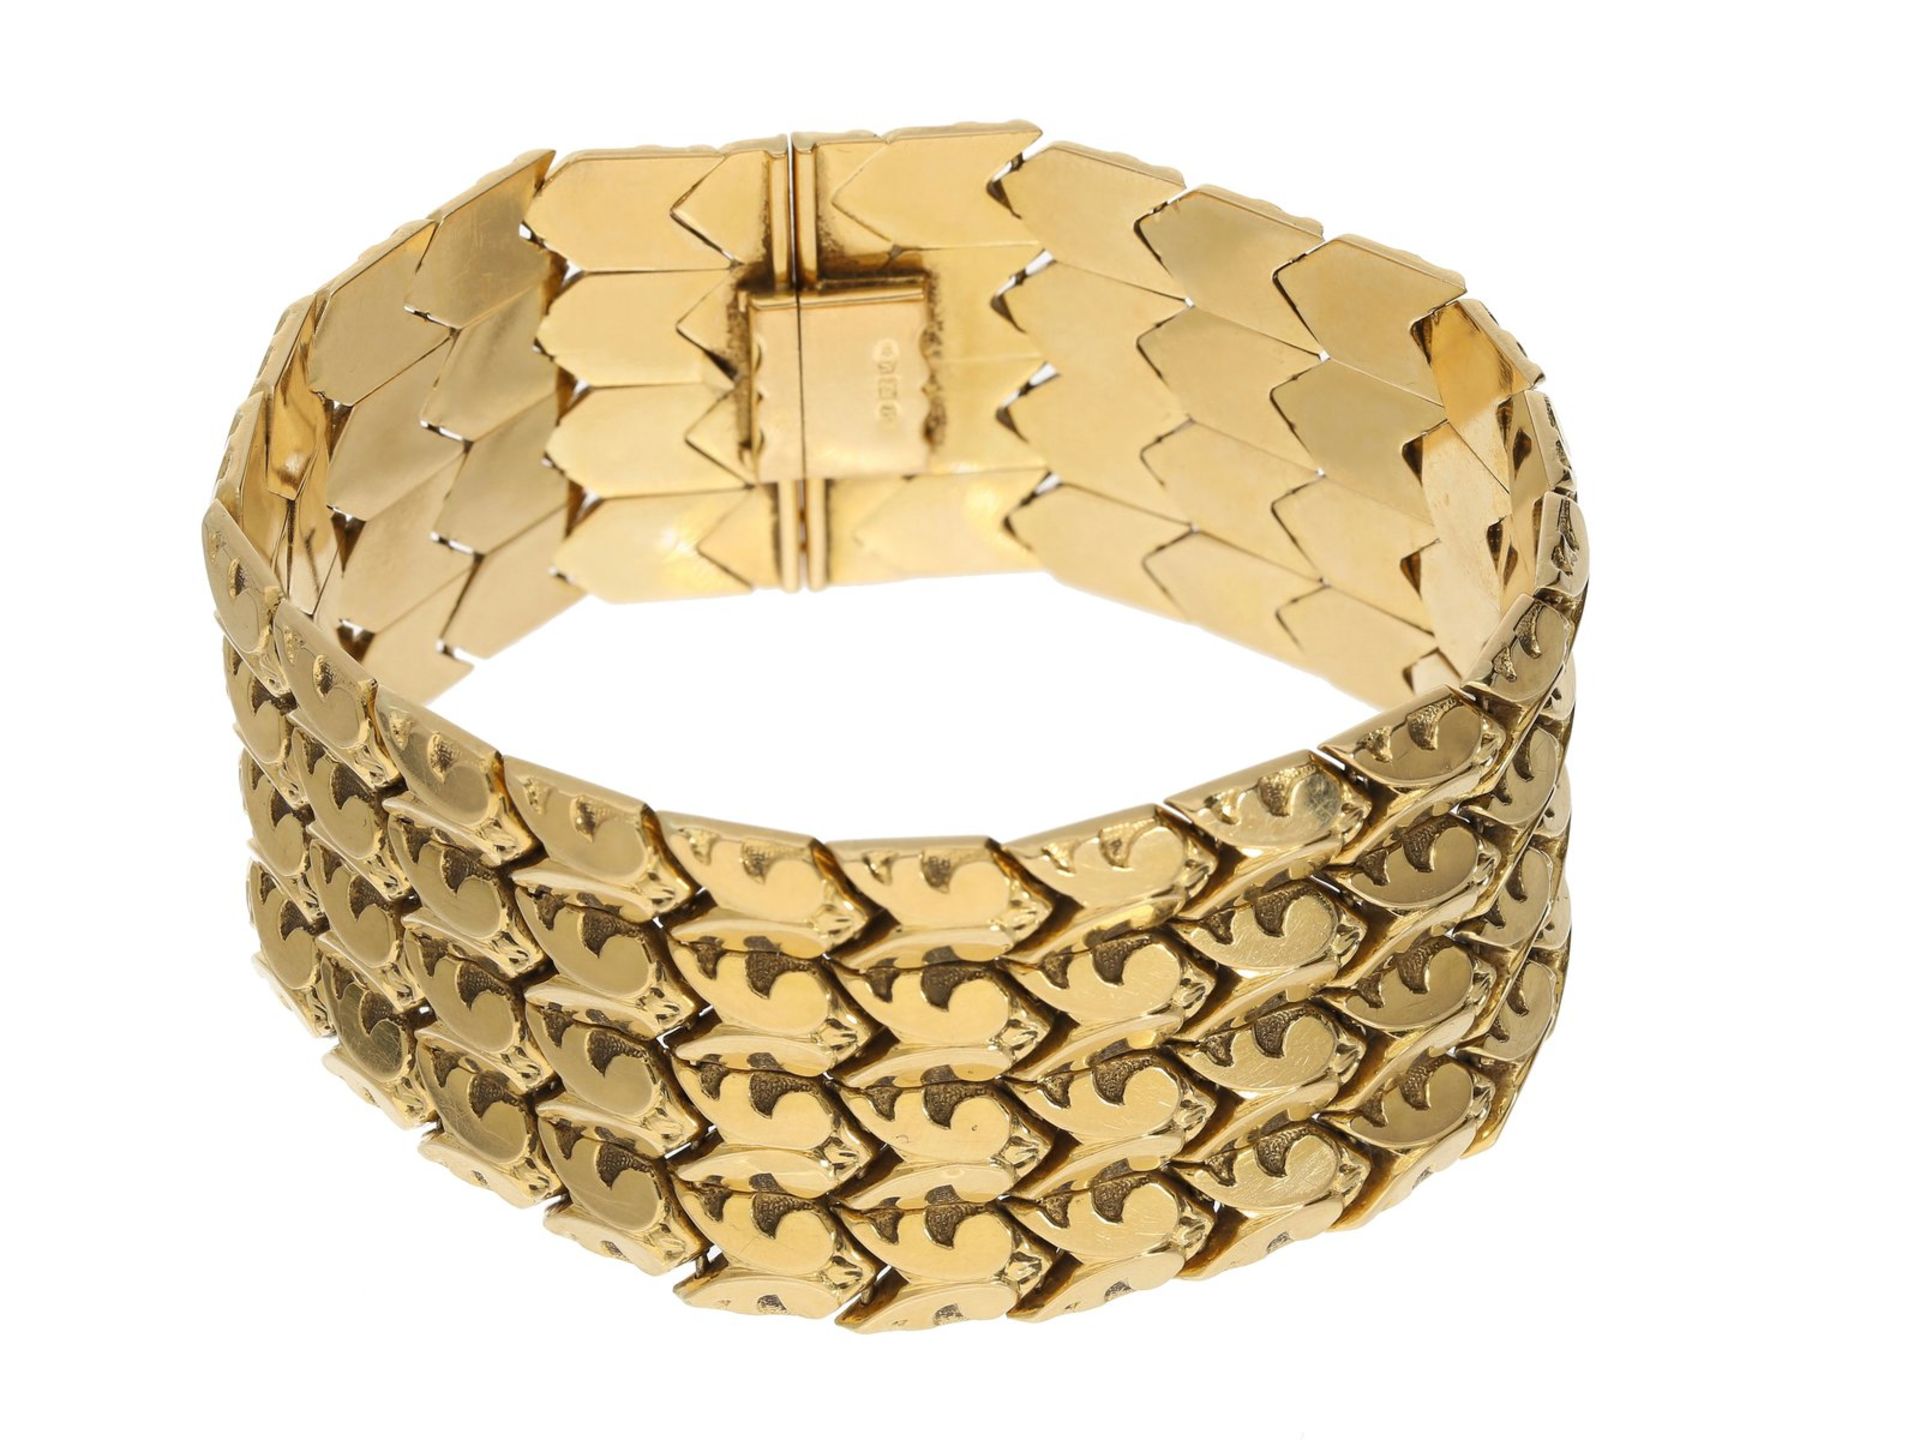 Armband: sehr breites vintage Goldarmband mit dekorativem Muster, 18K Gold Ca. 19cm lang, ca. 3cm